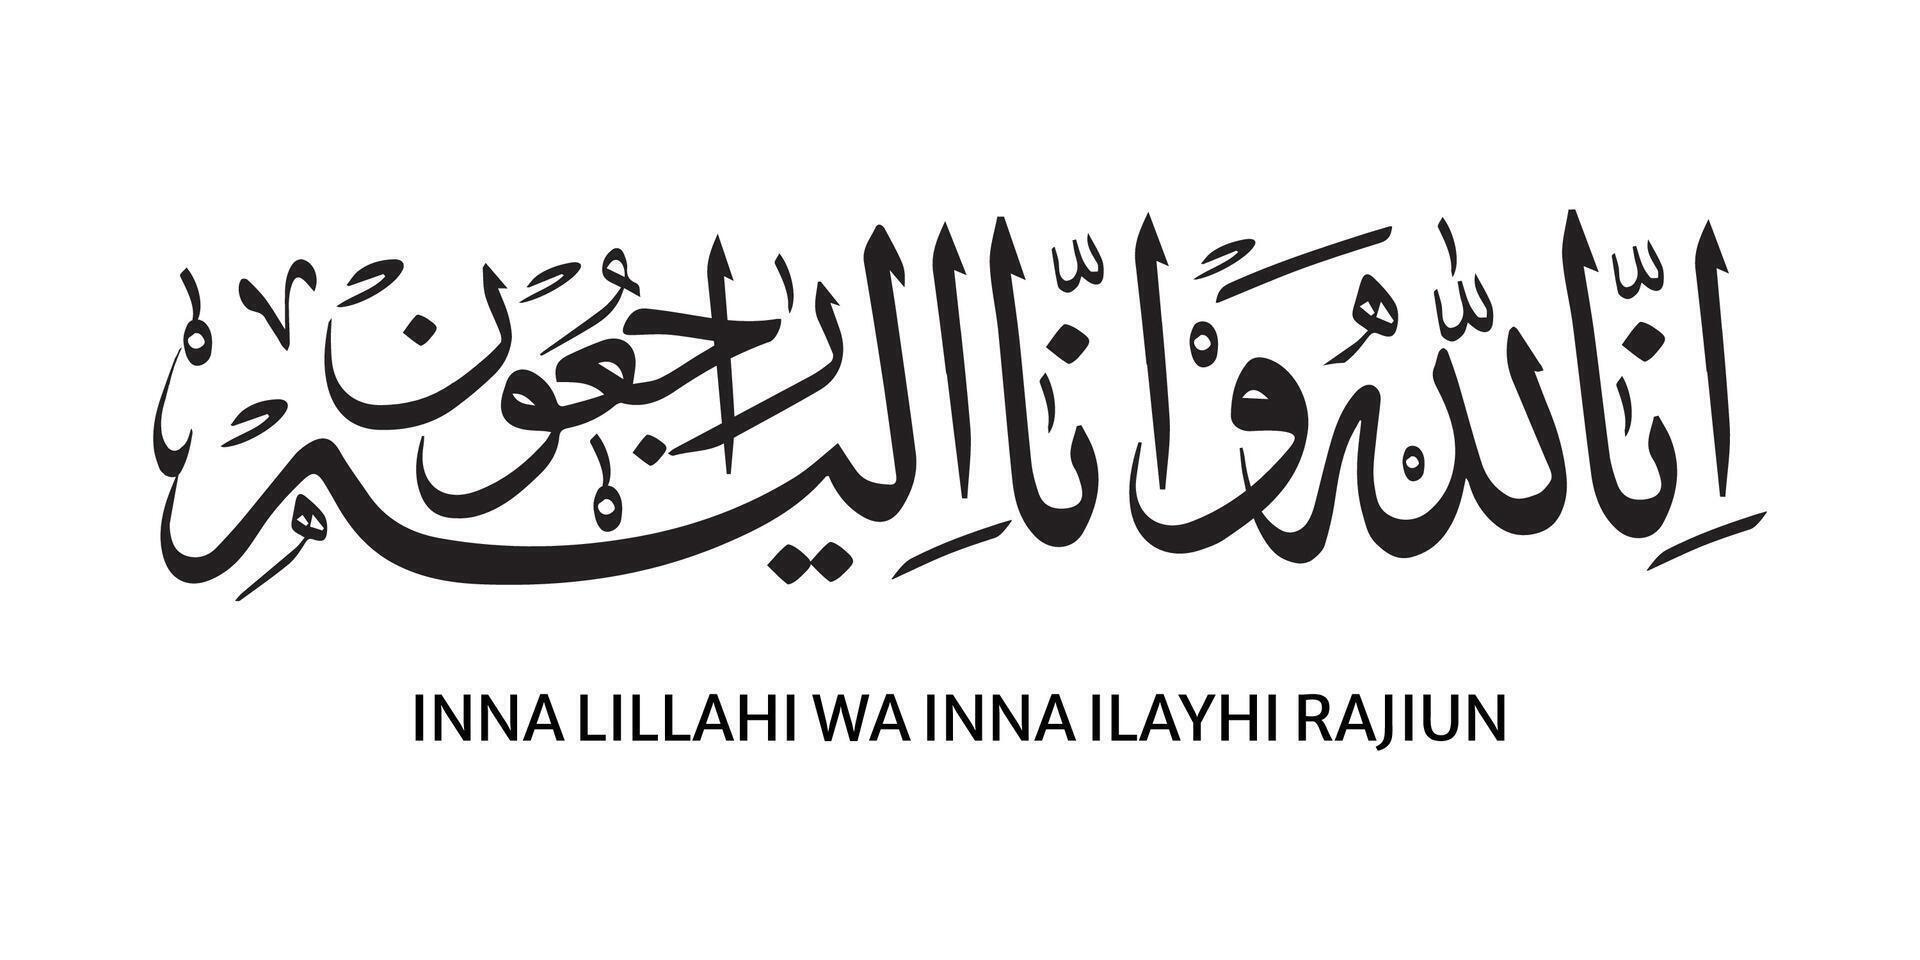 Arabo calligrafia di inna lillahi wa inna ilaihi raji'un tradizionale e moderno islamico arte per riposo nel pace o passato lontano vettore